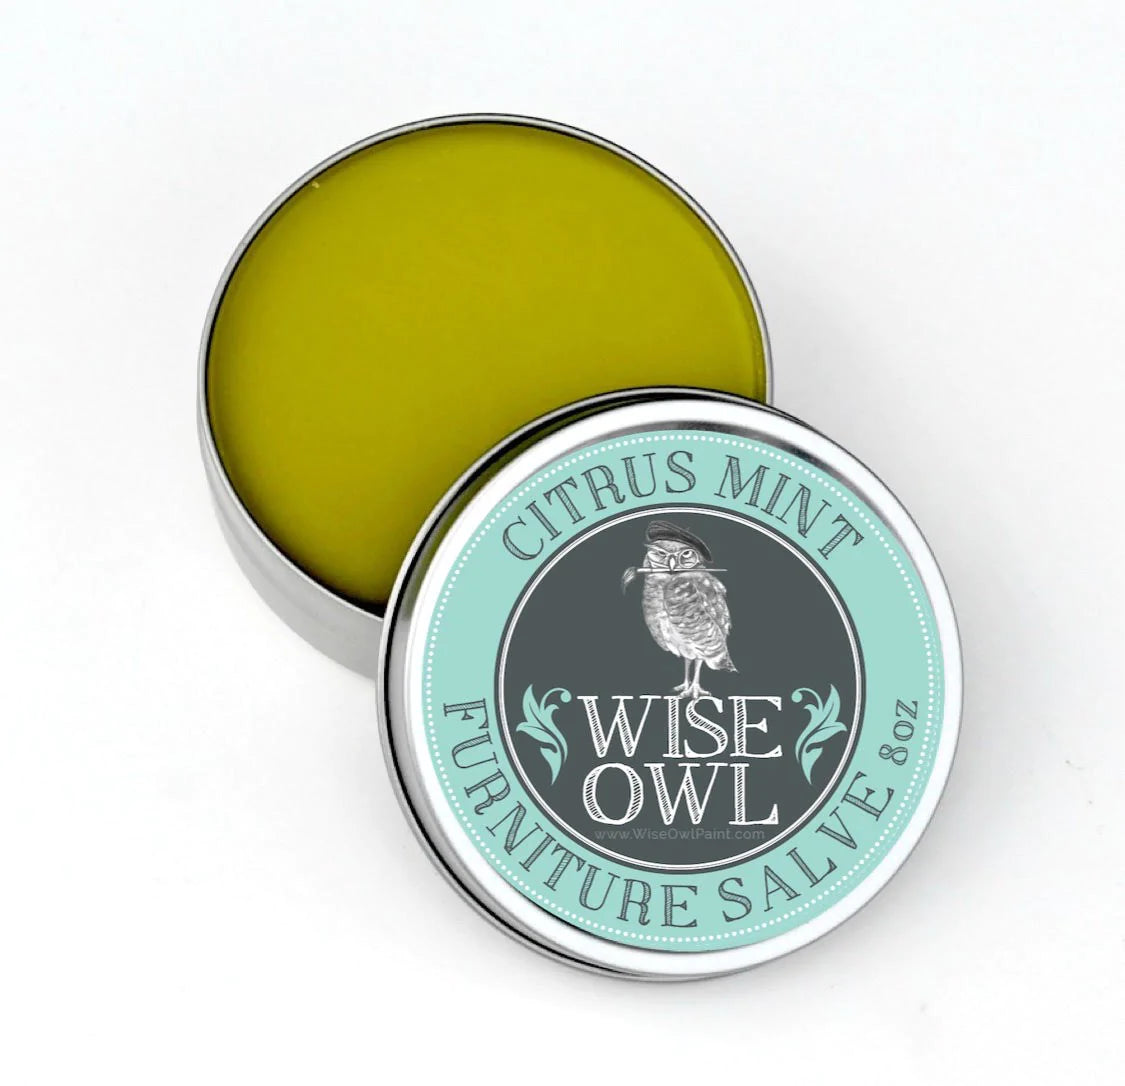 Wise Owl Funiture Salve - Citrus Mint